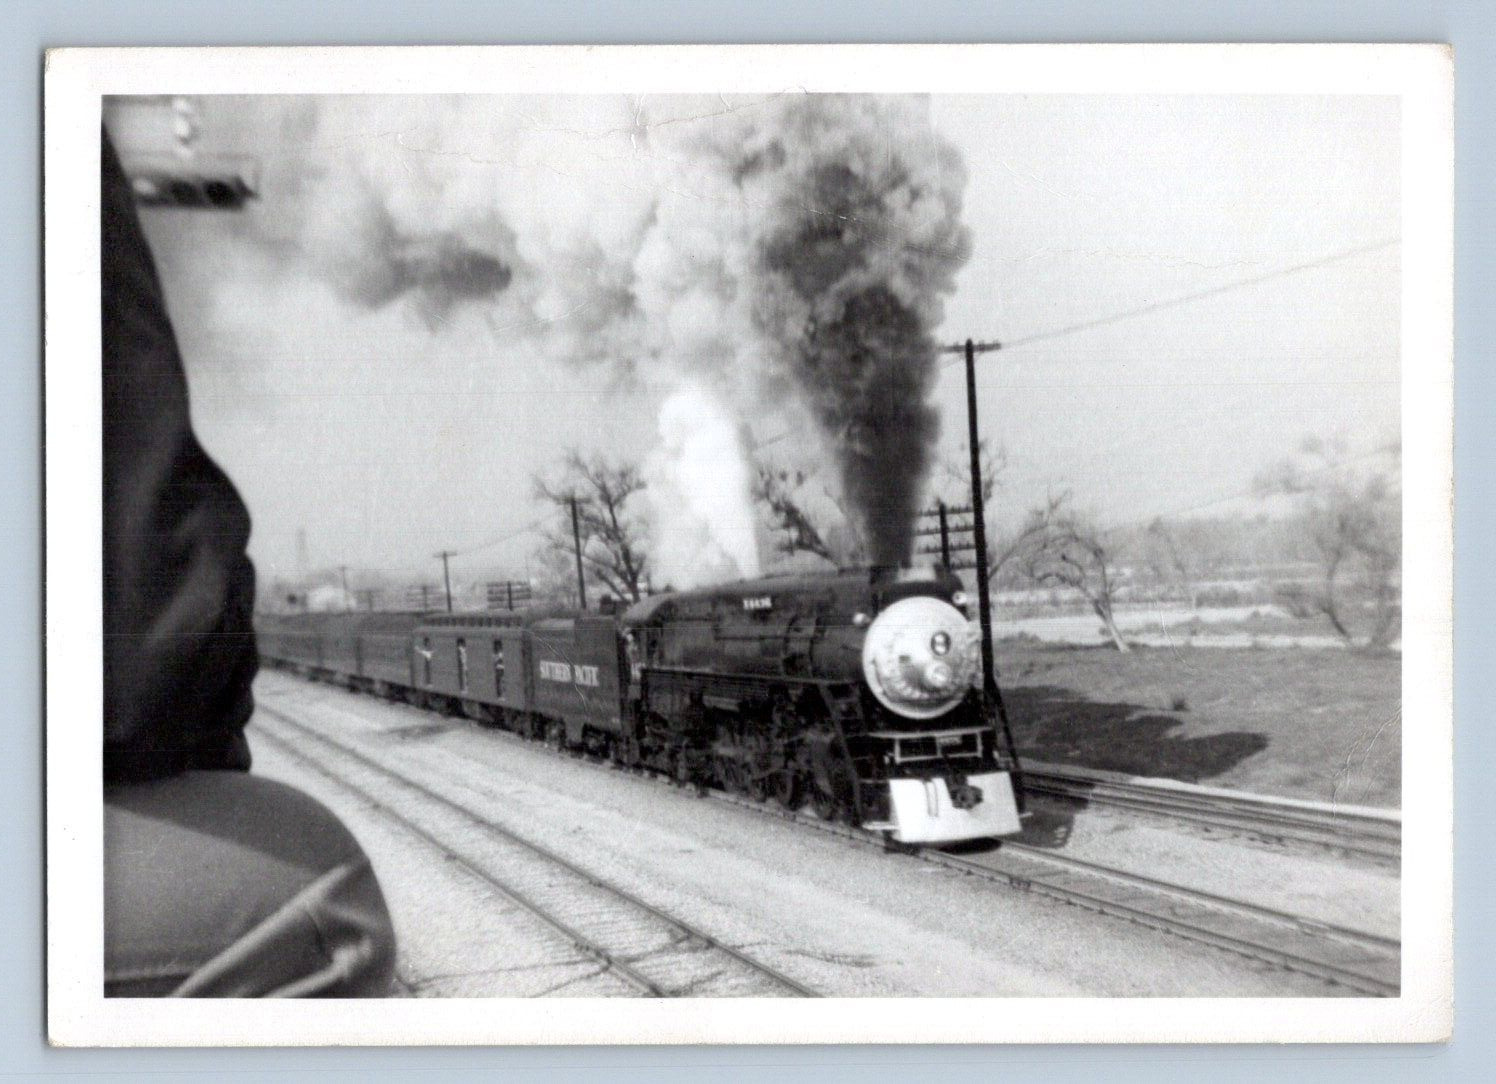 ORIG. 1956. 4436 S.P. TRAIN, COLTON, CA. SEARCY  5X7 TRAIN PHOTO